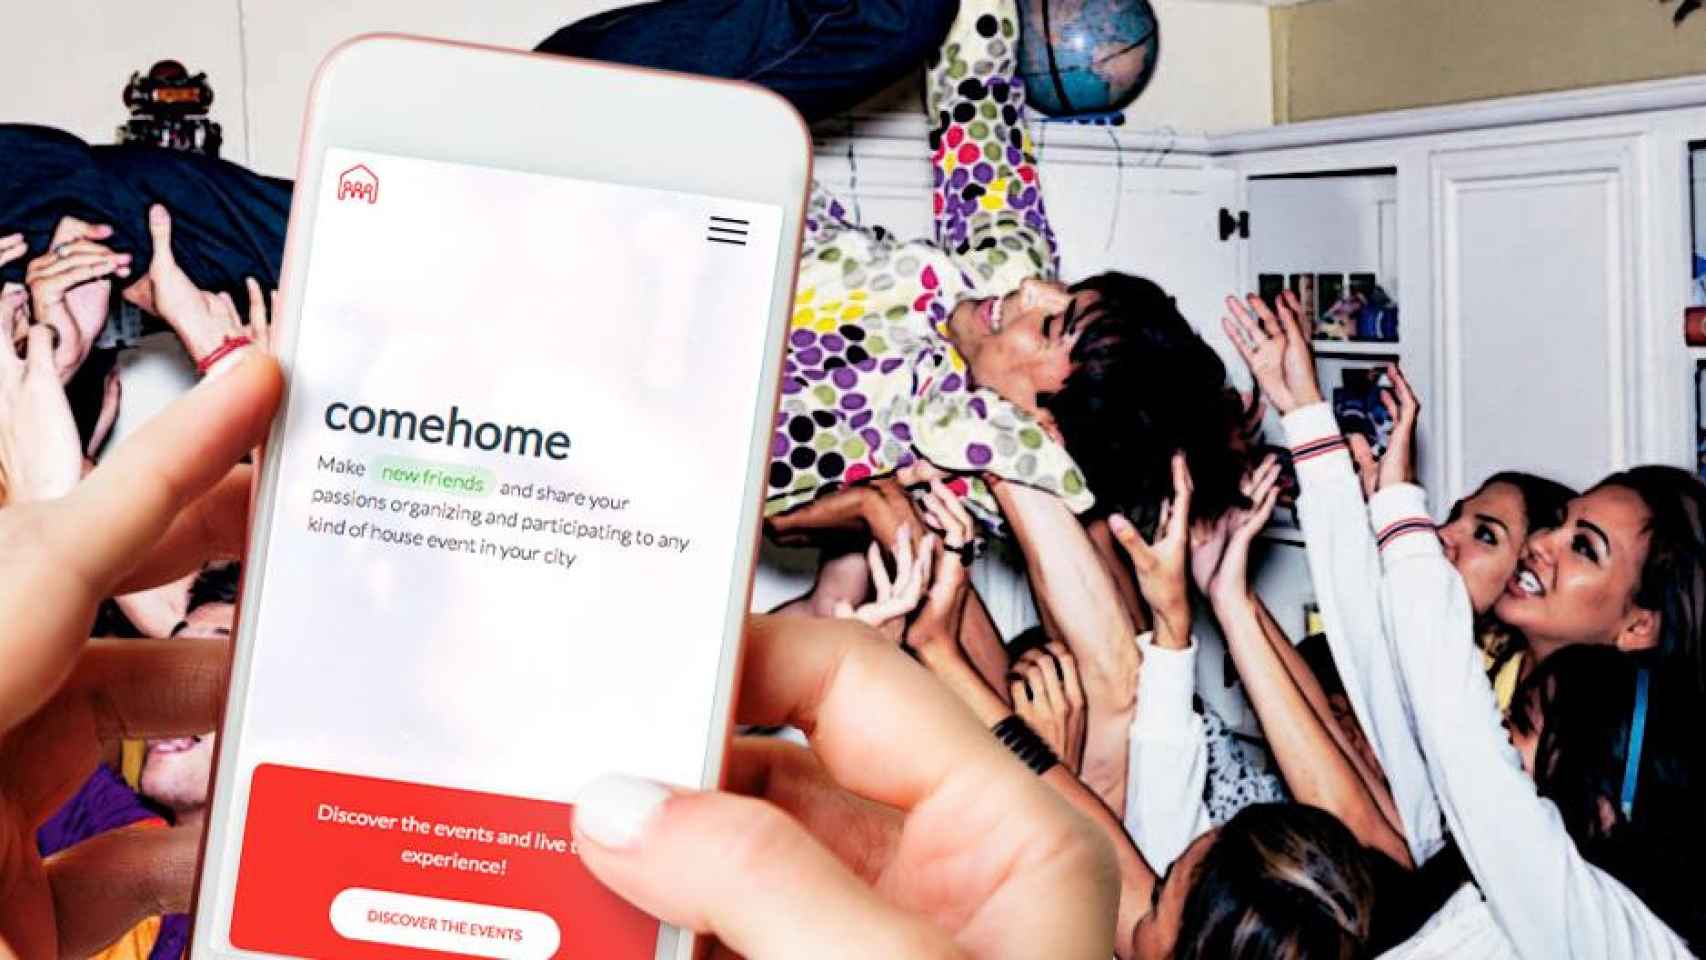 Un joven utiliza la aplicación 'Comehome' para montar una fiesta en su casa / CG